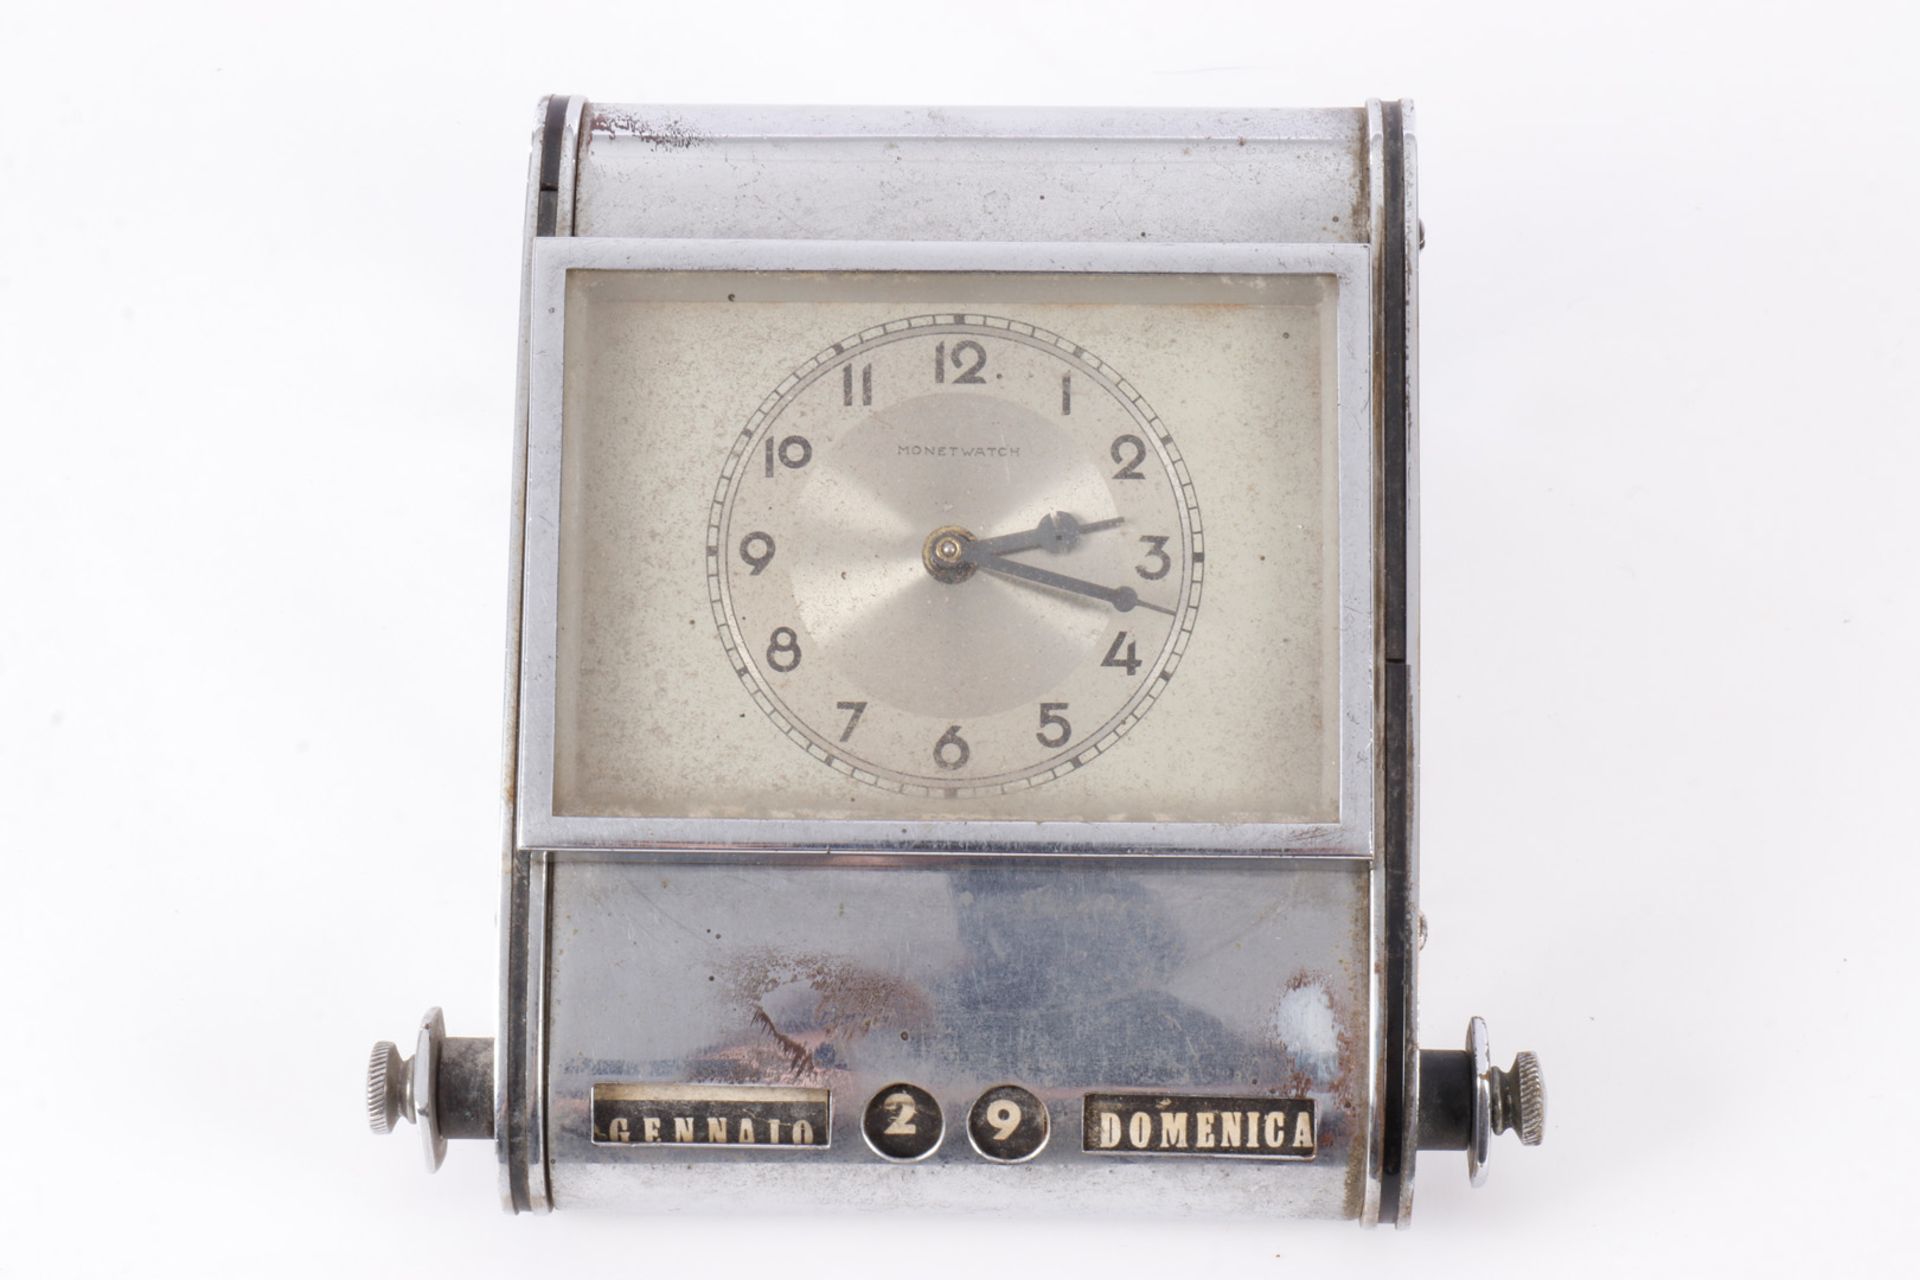 Schreibtischuhr Monet Watch, verchromt, mit Drehkalender, Gebrauchsspuren, Werk muss überholt - Image 3 of 4